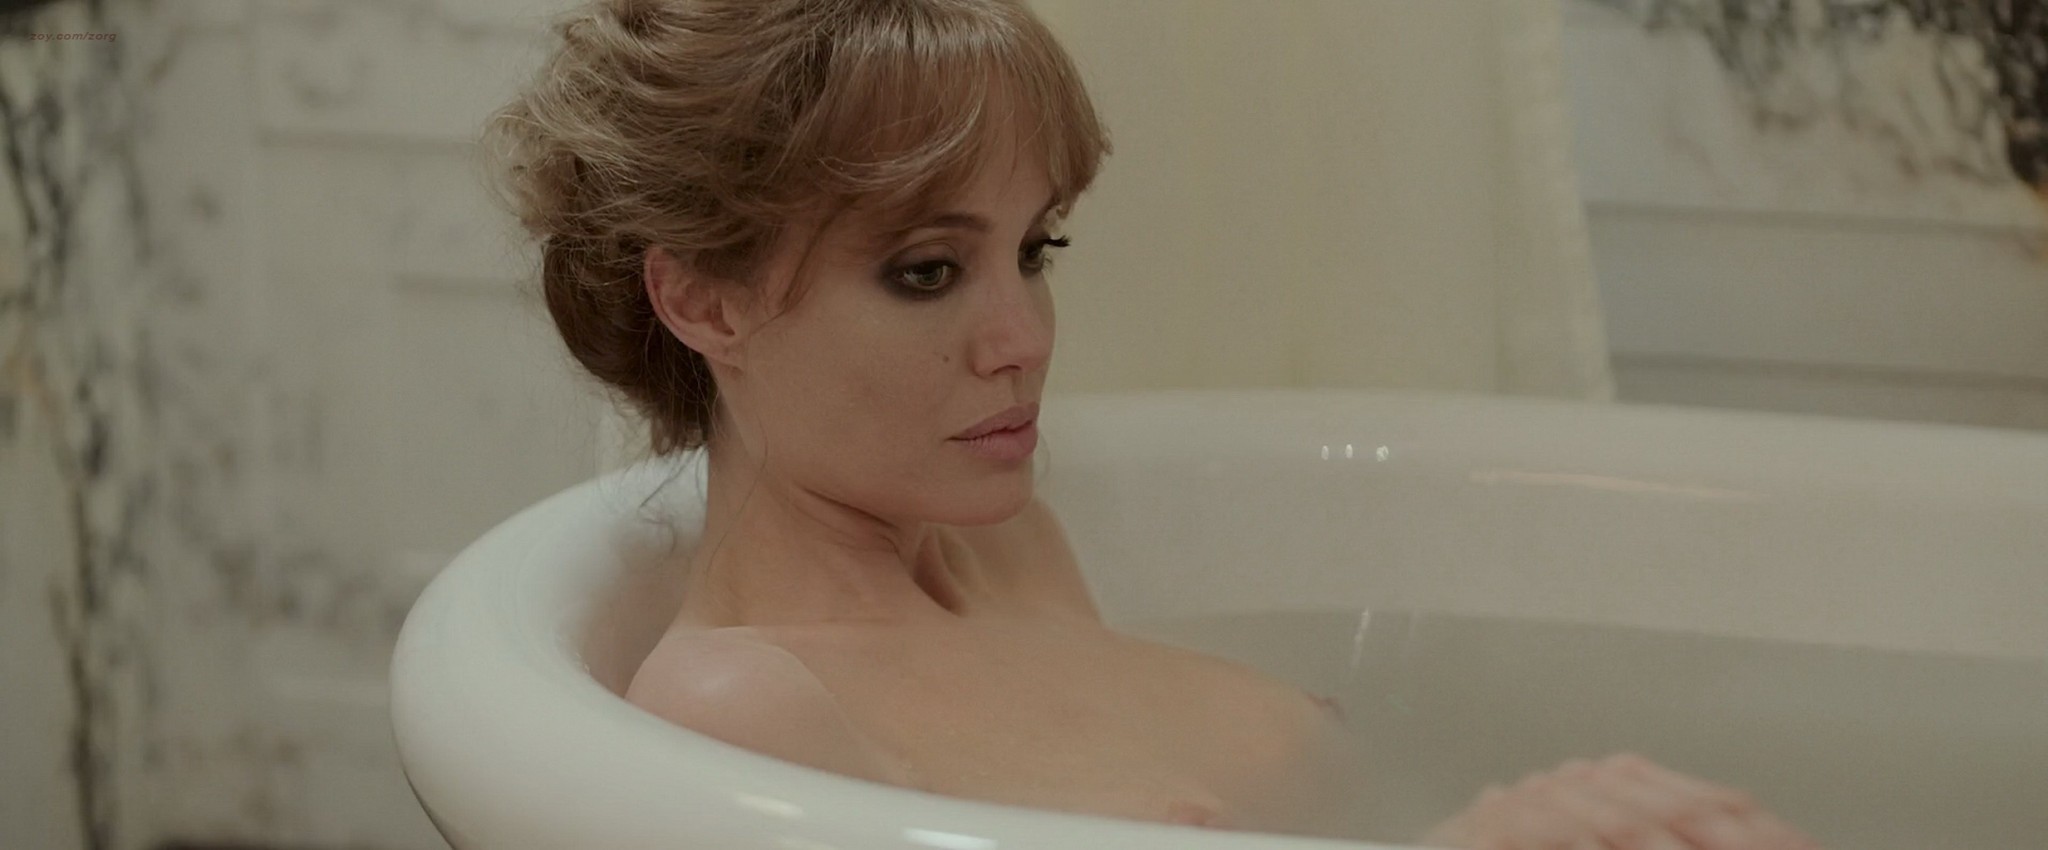 Angelina jolie en topless en la bañera teniendo sexo
 #75146853